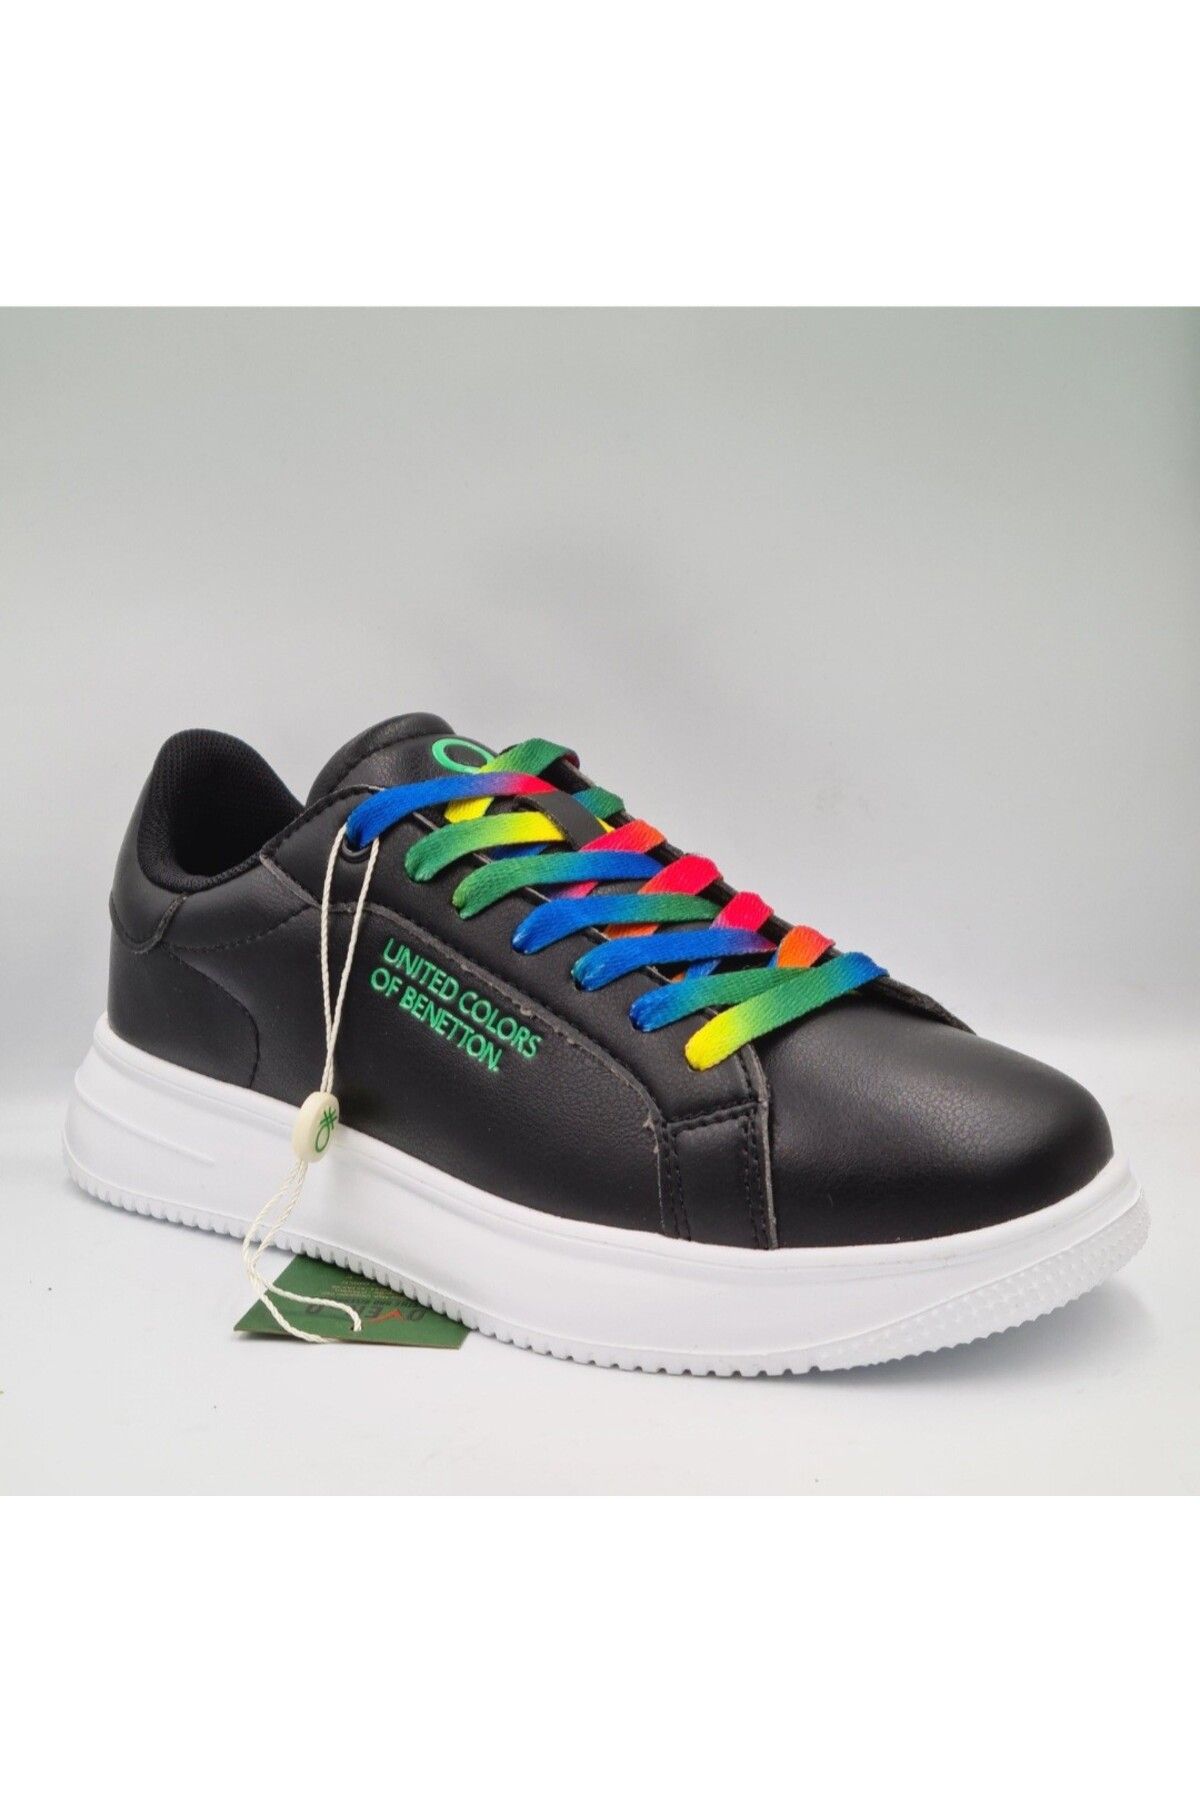 United Colors of Benetton Benetton 10061 Siyah Kadın Sneaker Spor Ayakkabı